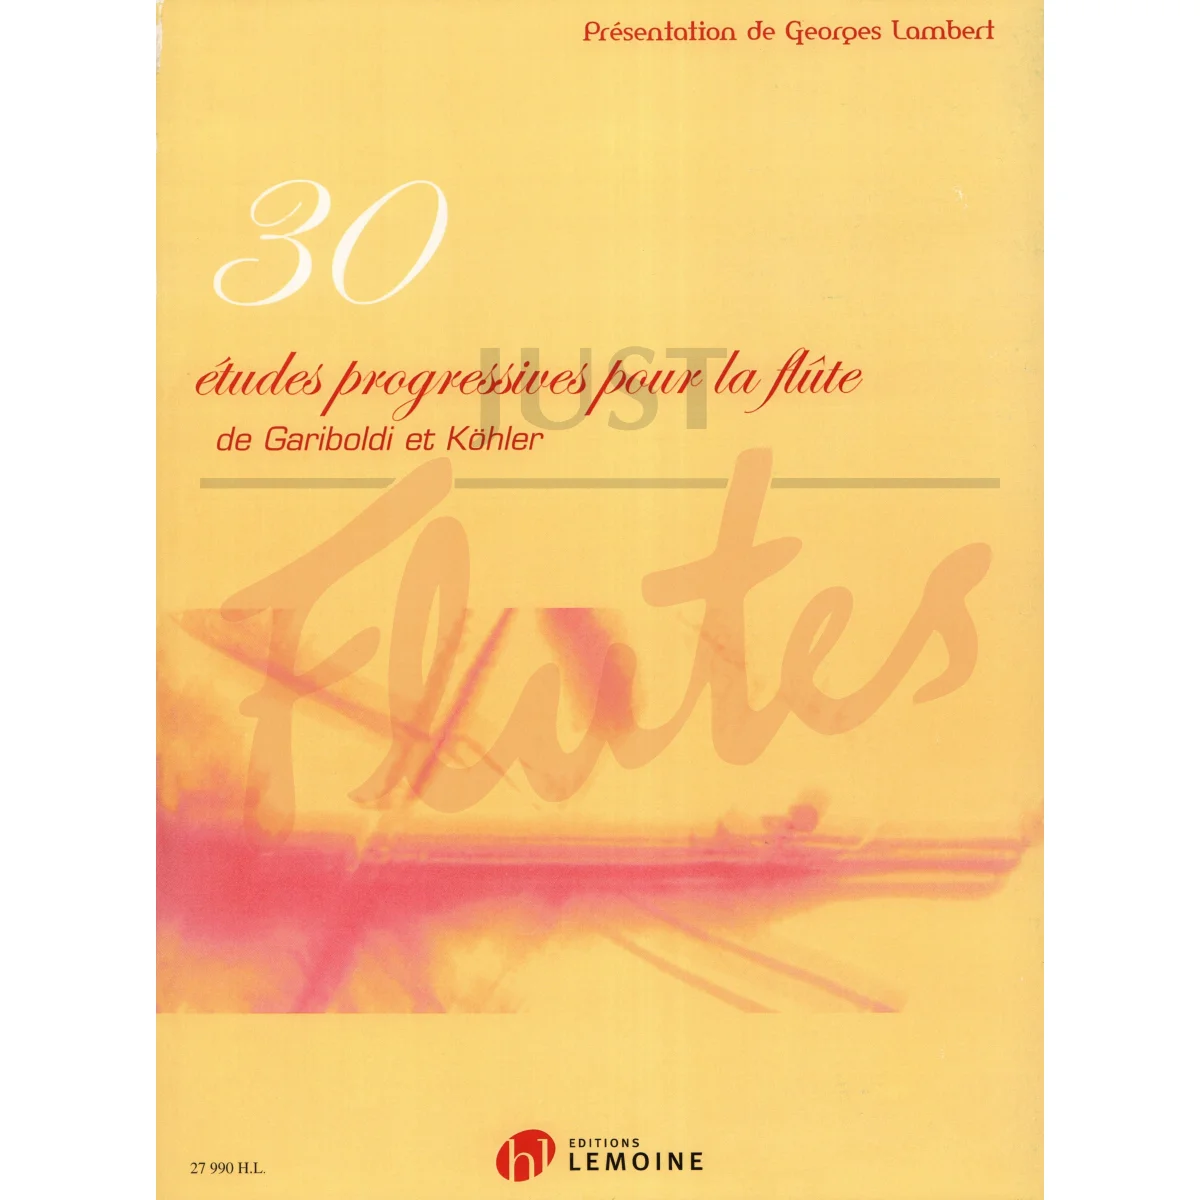 30 Progressive Studies of Gariboldi and Kohler for Flute